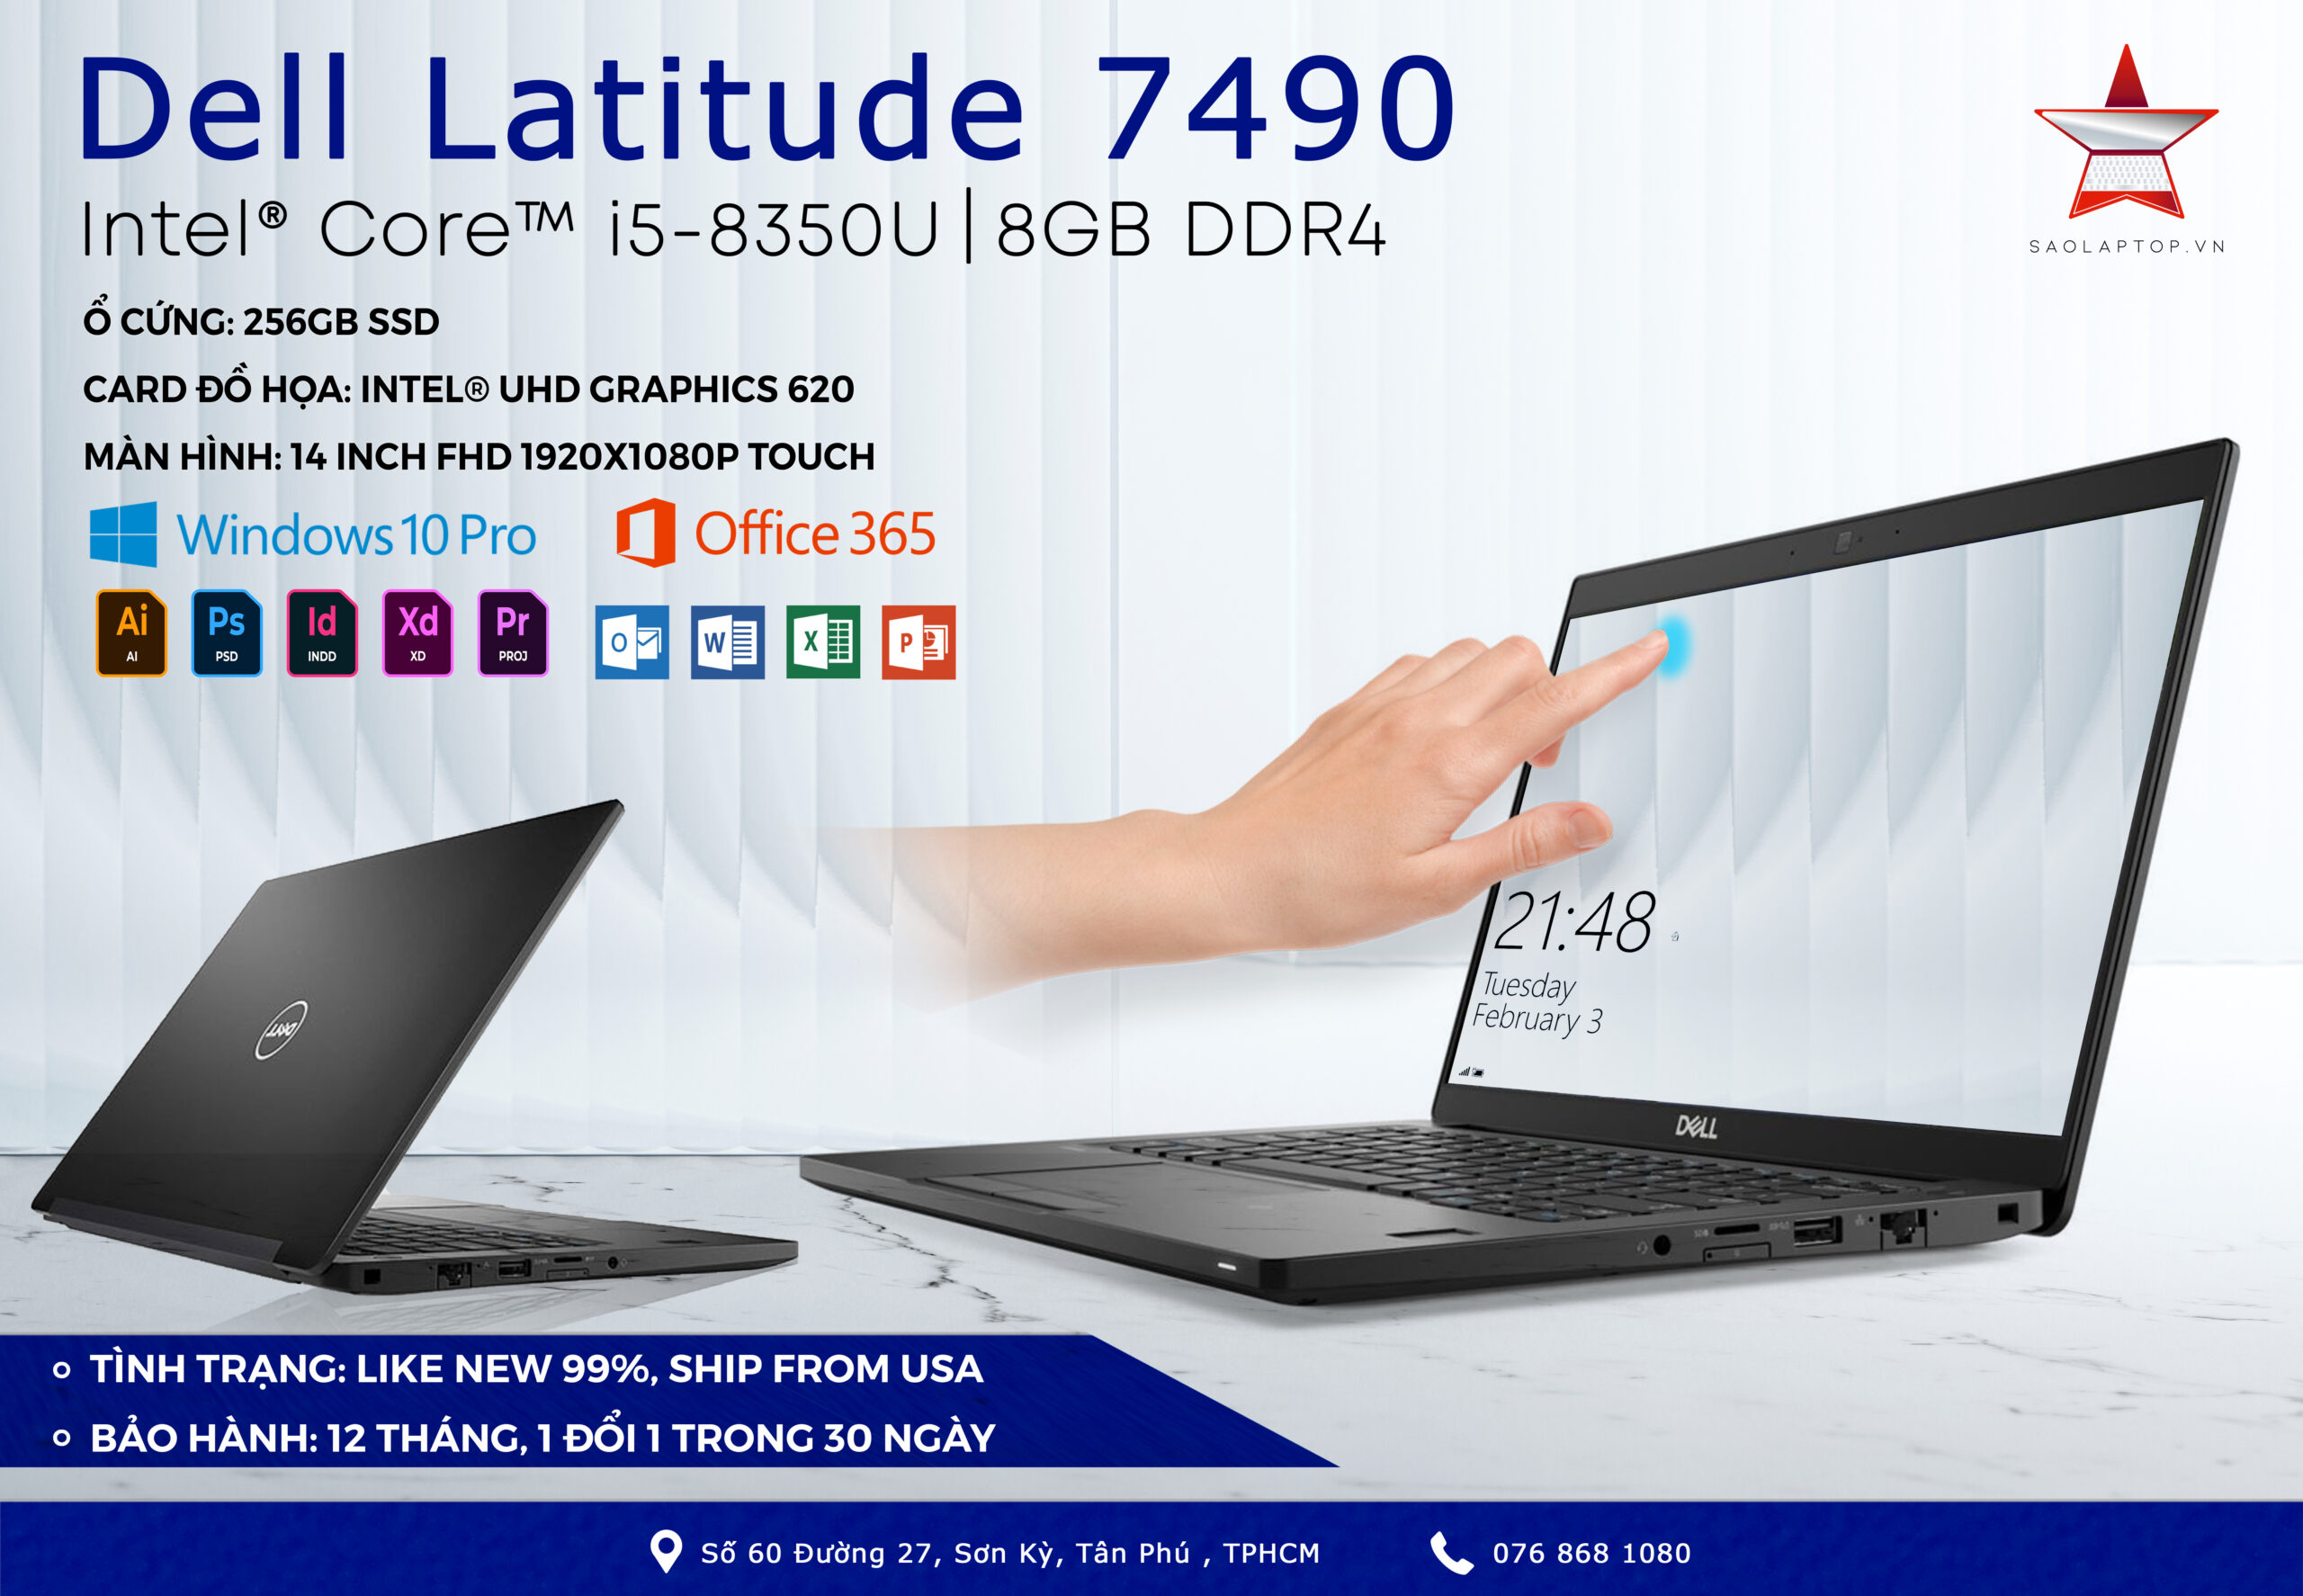 Dell Latitude 7490 – Core I5 8350u, Ram 8gb, Ssd 256gb, 14 Inch Fhd Touch